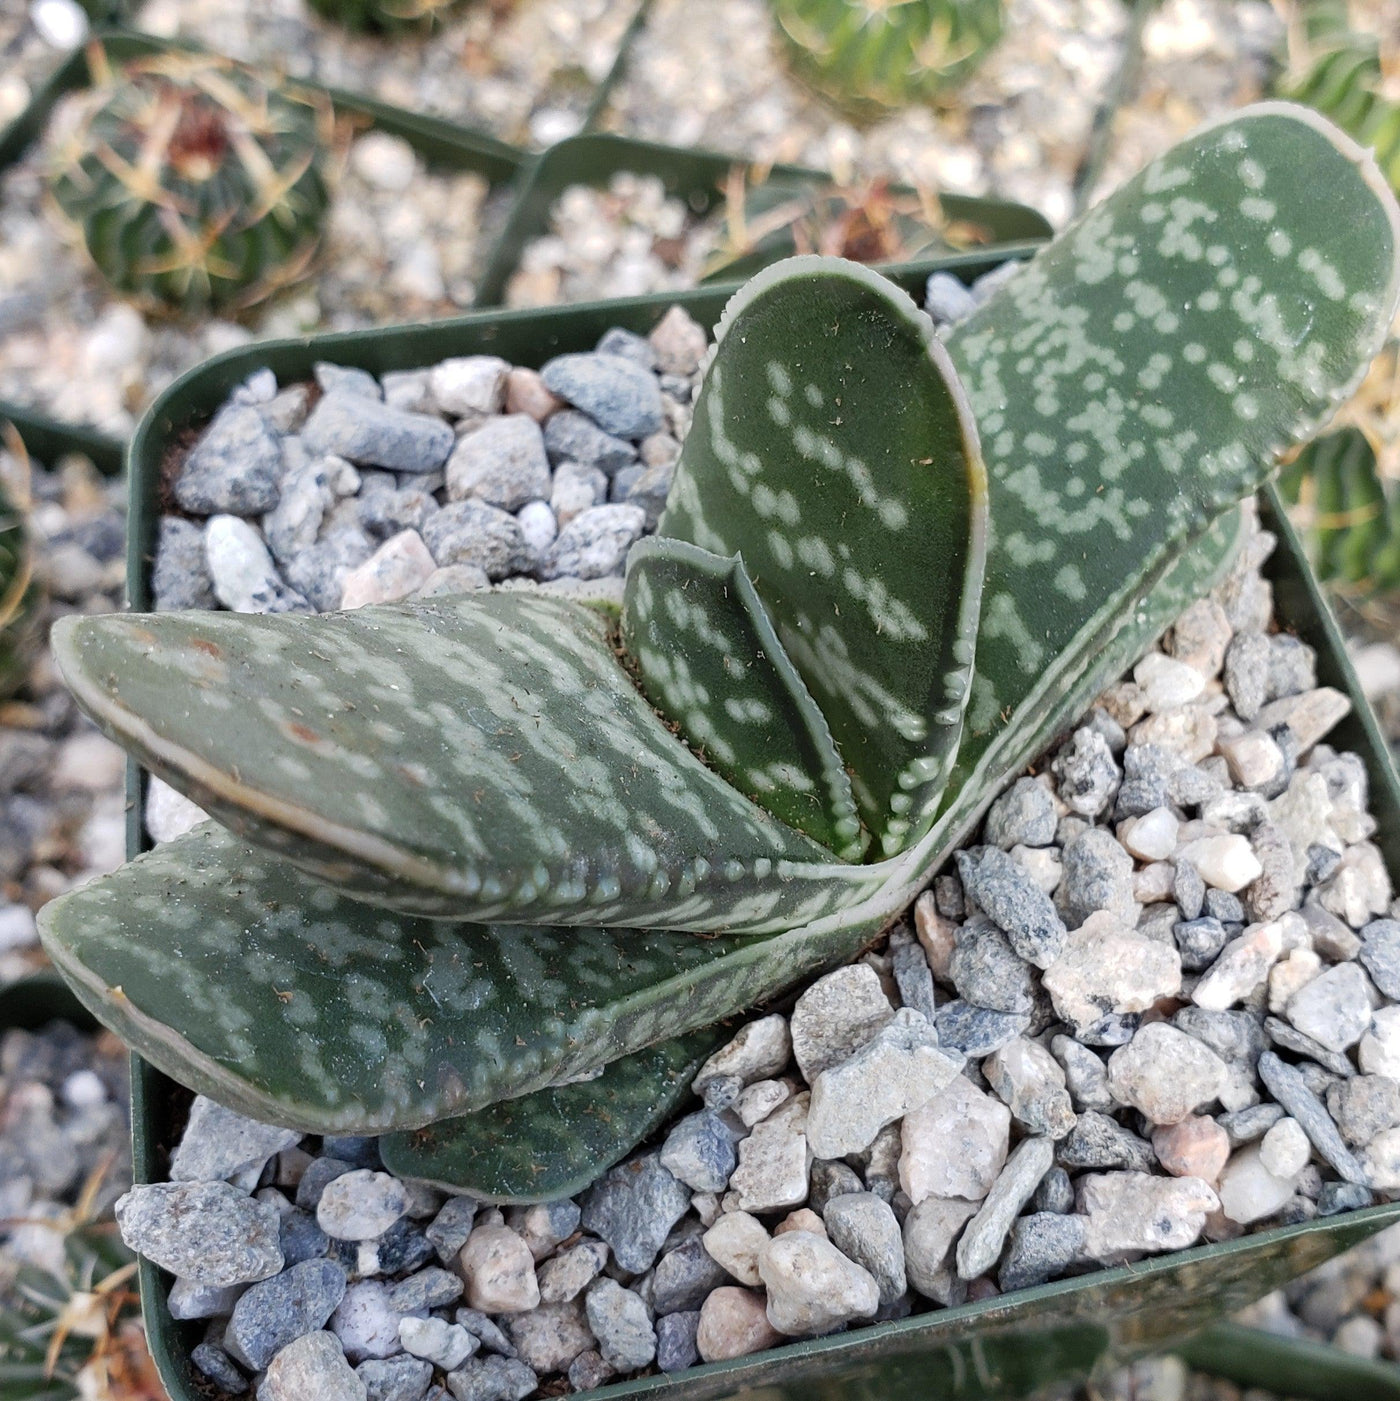 Gasteria bicolor liliputana